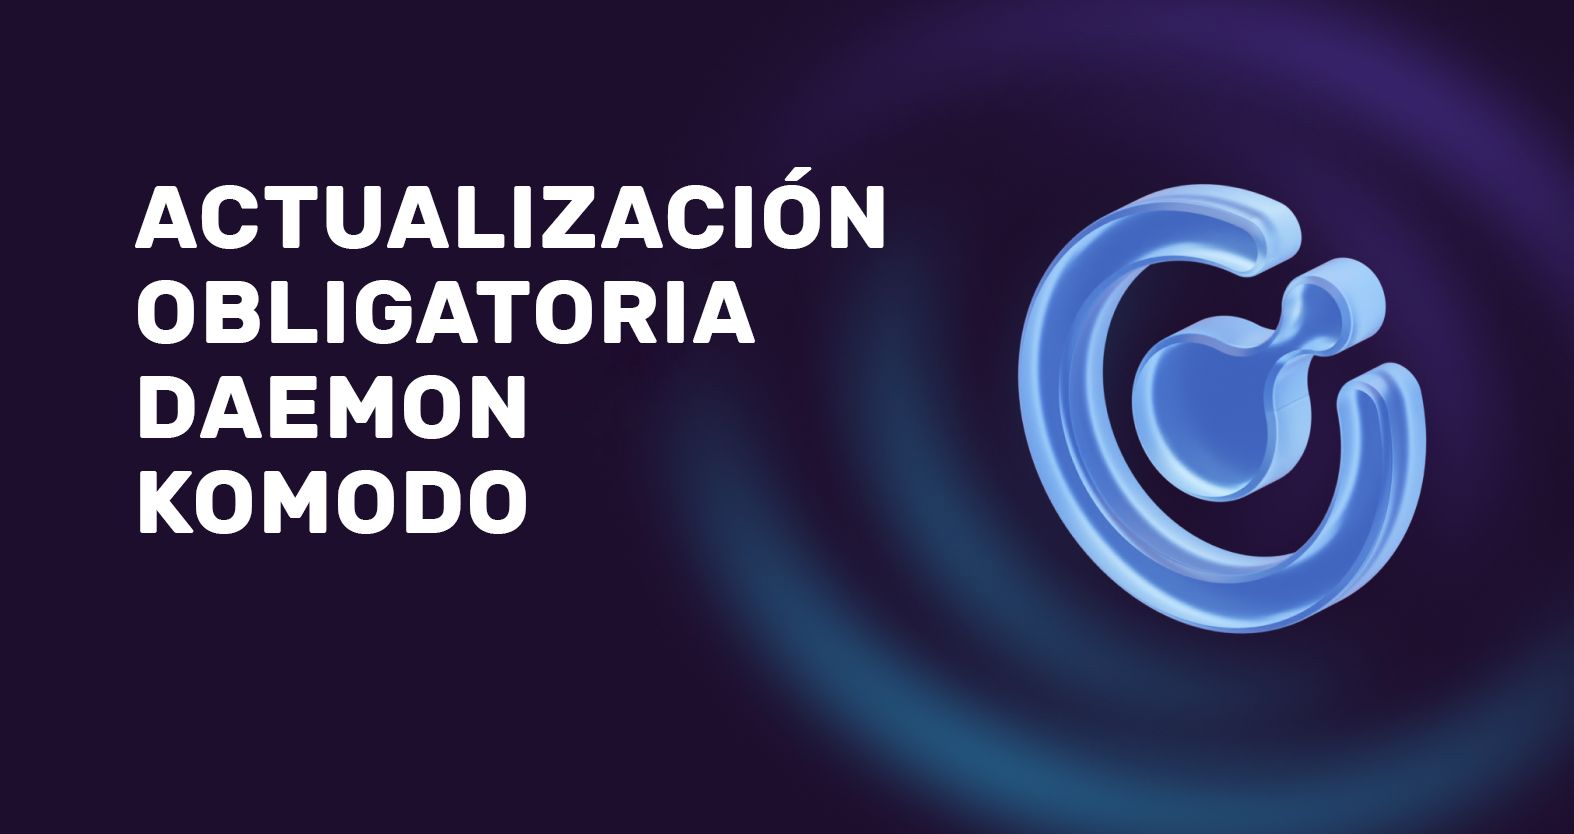 Actualización obligatoria de Komodo Daemon | v0.8.1 [Falkor]